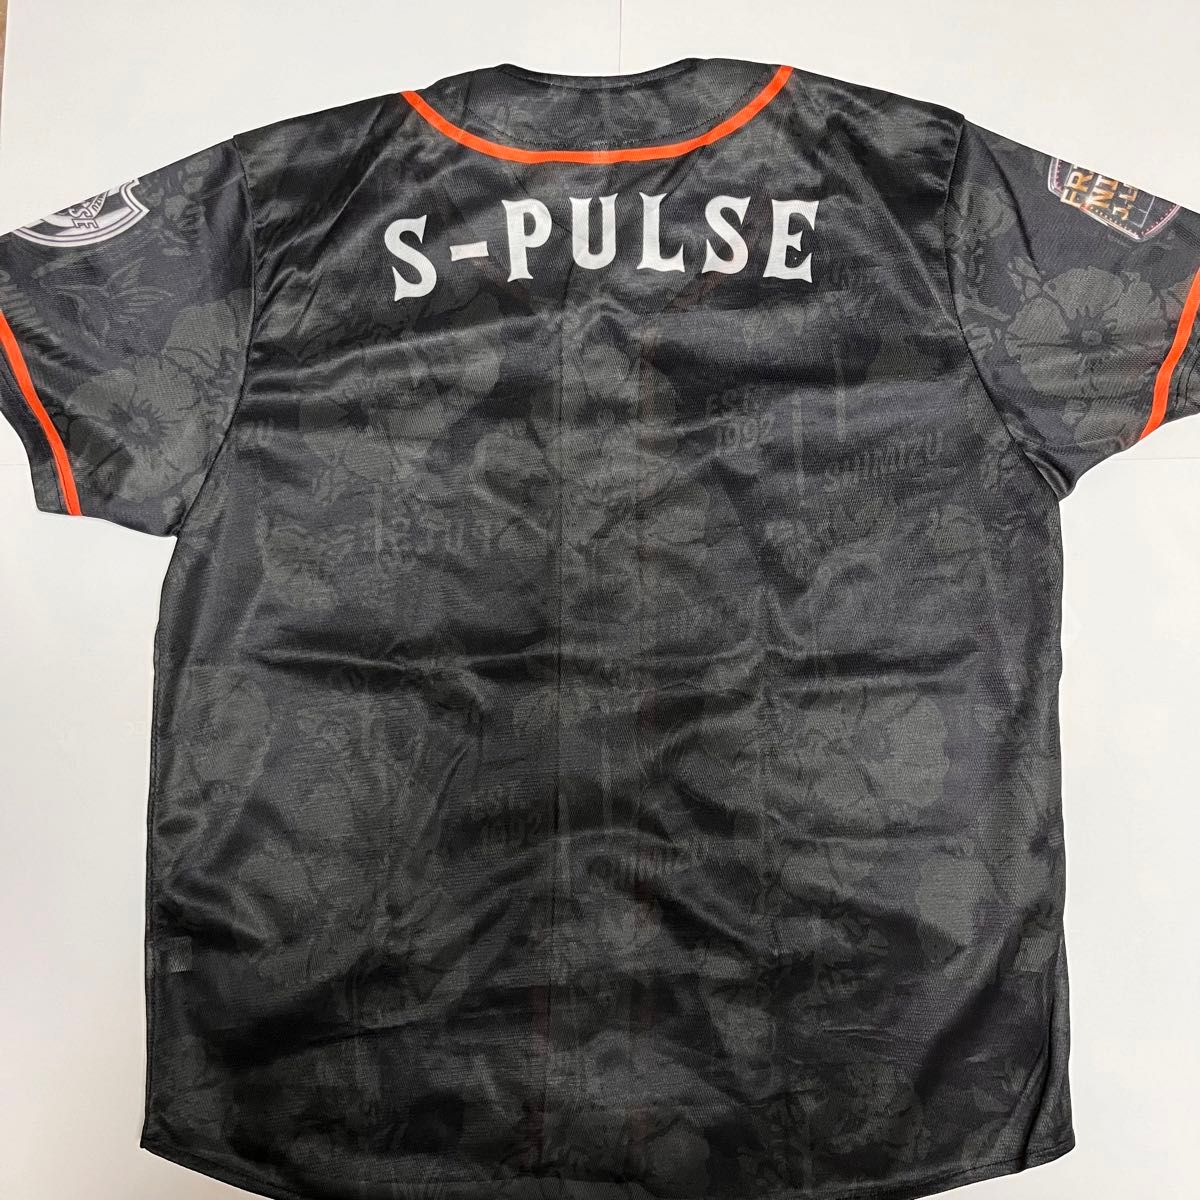 清水エスパルス オリジナル ベースボールシャツ ウェア ユニフォーム ブラック サッカー